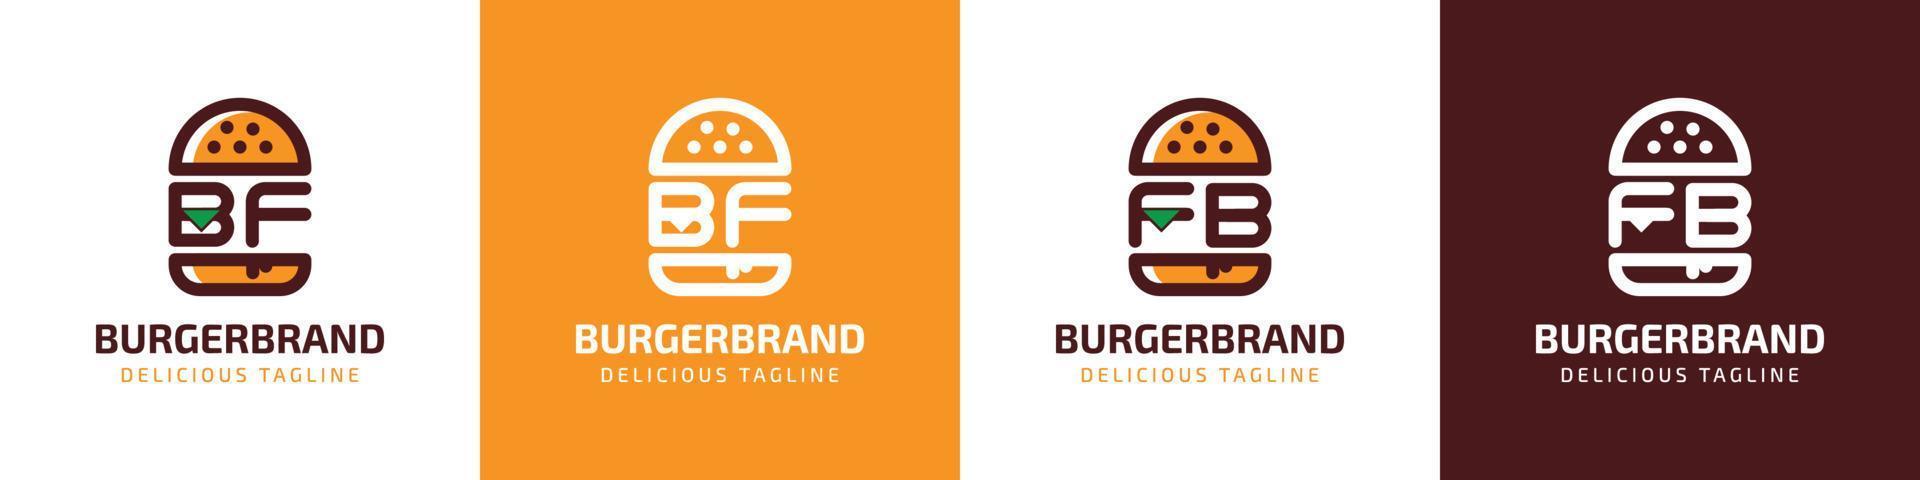 brev bf och fb burger logotyp, lämplig för några företag relaterad till burger med bf eller fb initialer. vektor